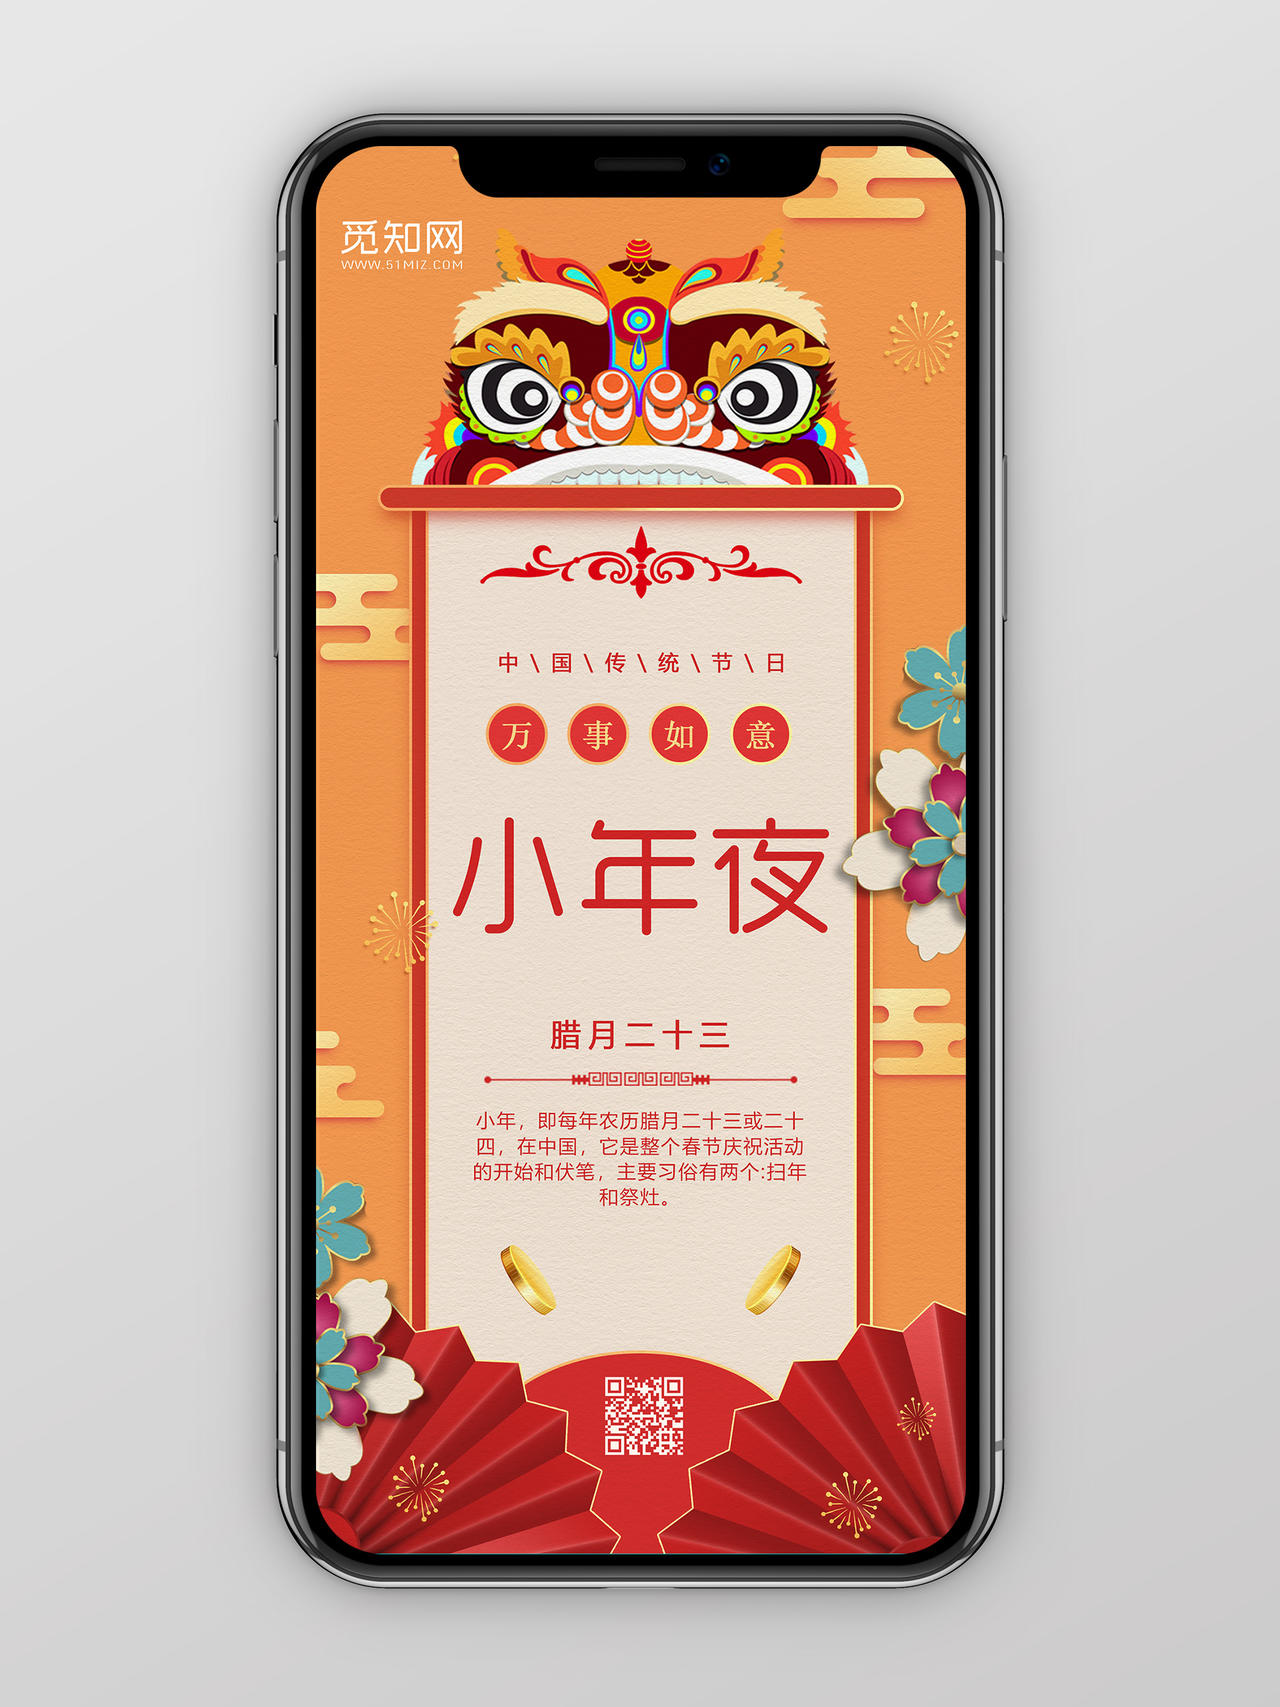 橙色虎头中国传统节日小年夜手机海报h5